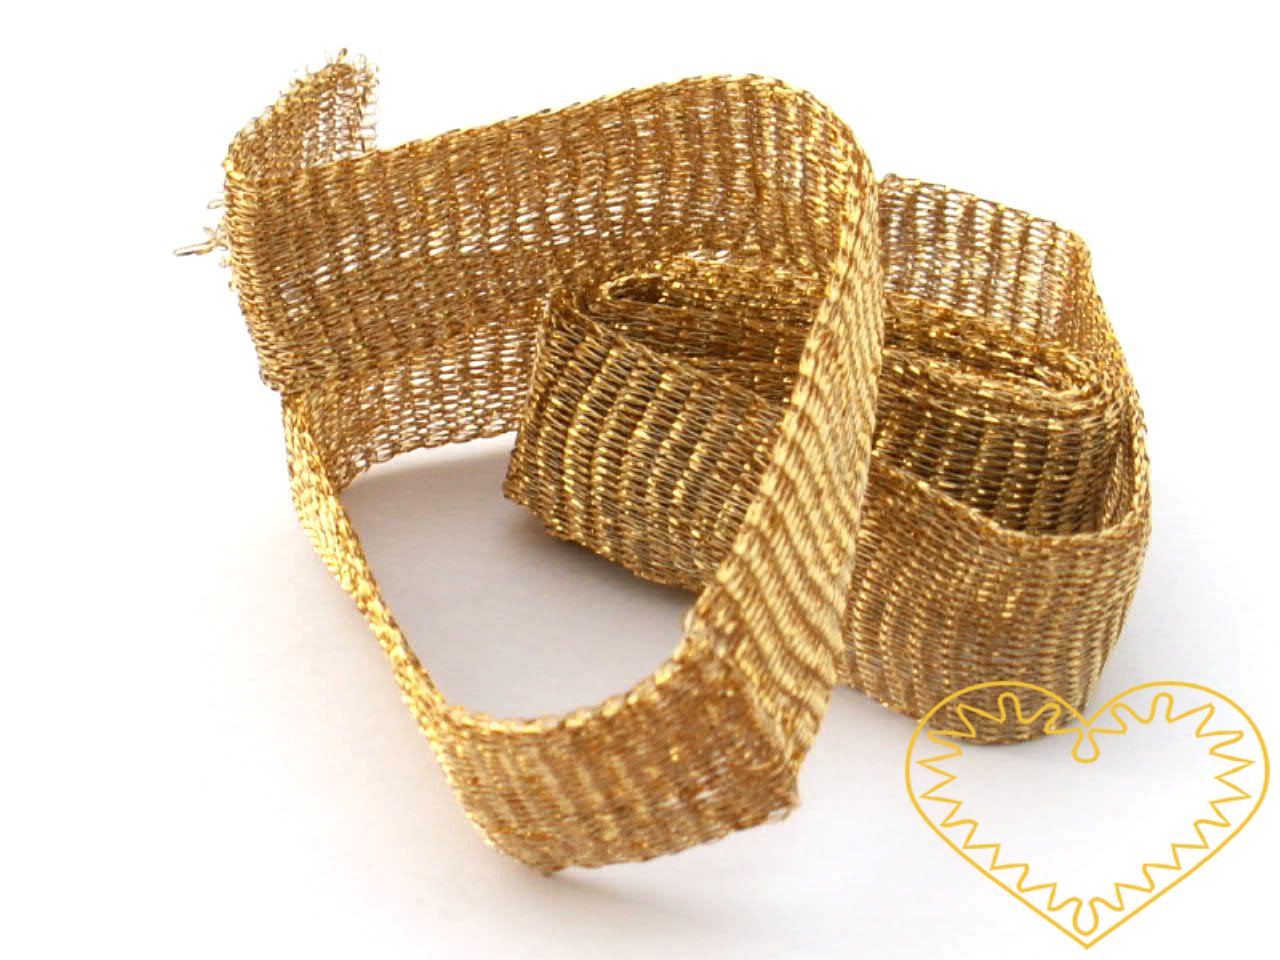 Širší bižuterní drátěný pásek - zlatý tmavší. Výborný a netradiční materiál pro výrobu originálních šperků. Jedná se vlastně o drátěný pletený tunel. Lze jej použít buď jako pásek (stužku, obojek) a zavěšovat na něj korálky a další přízdoby či jej rů